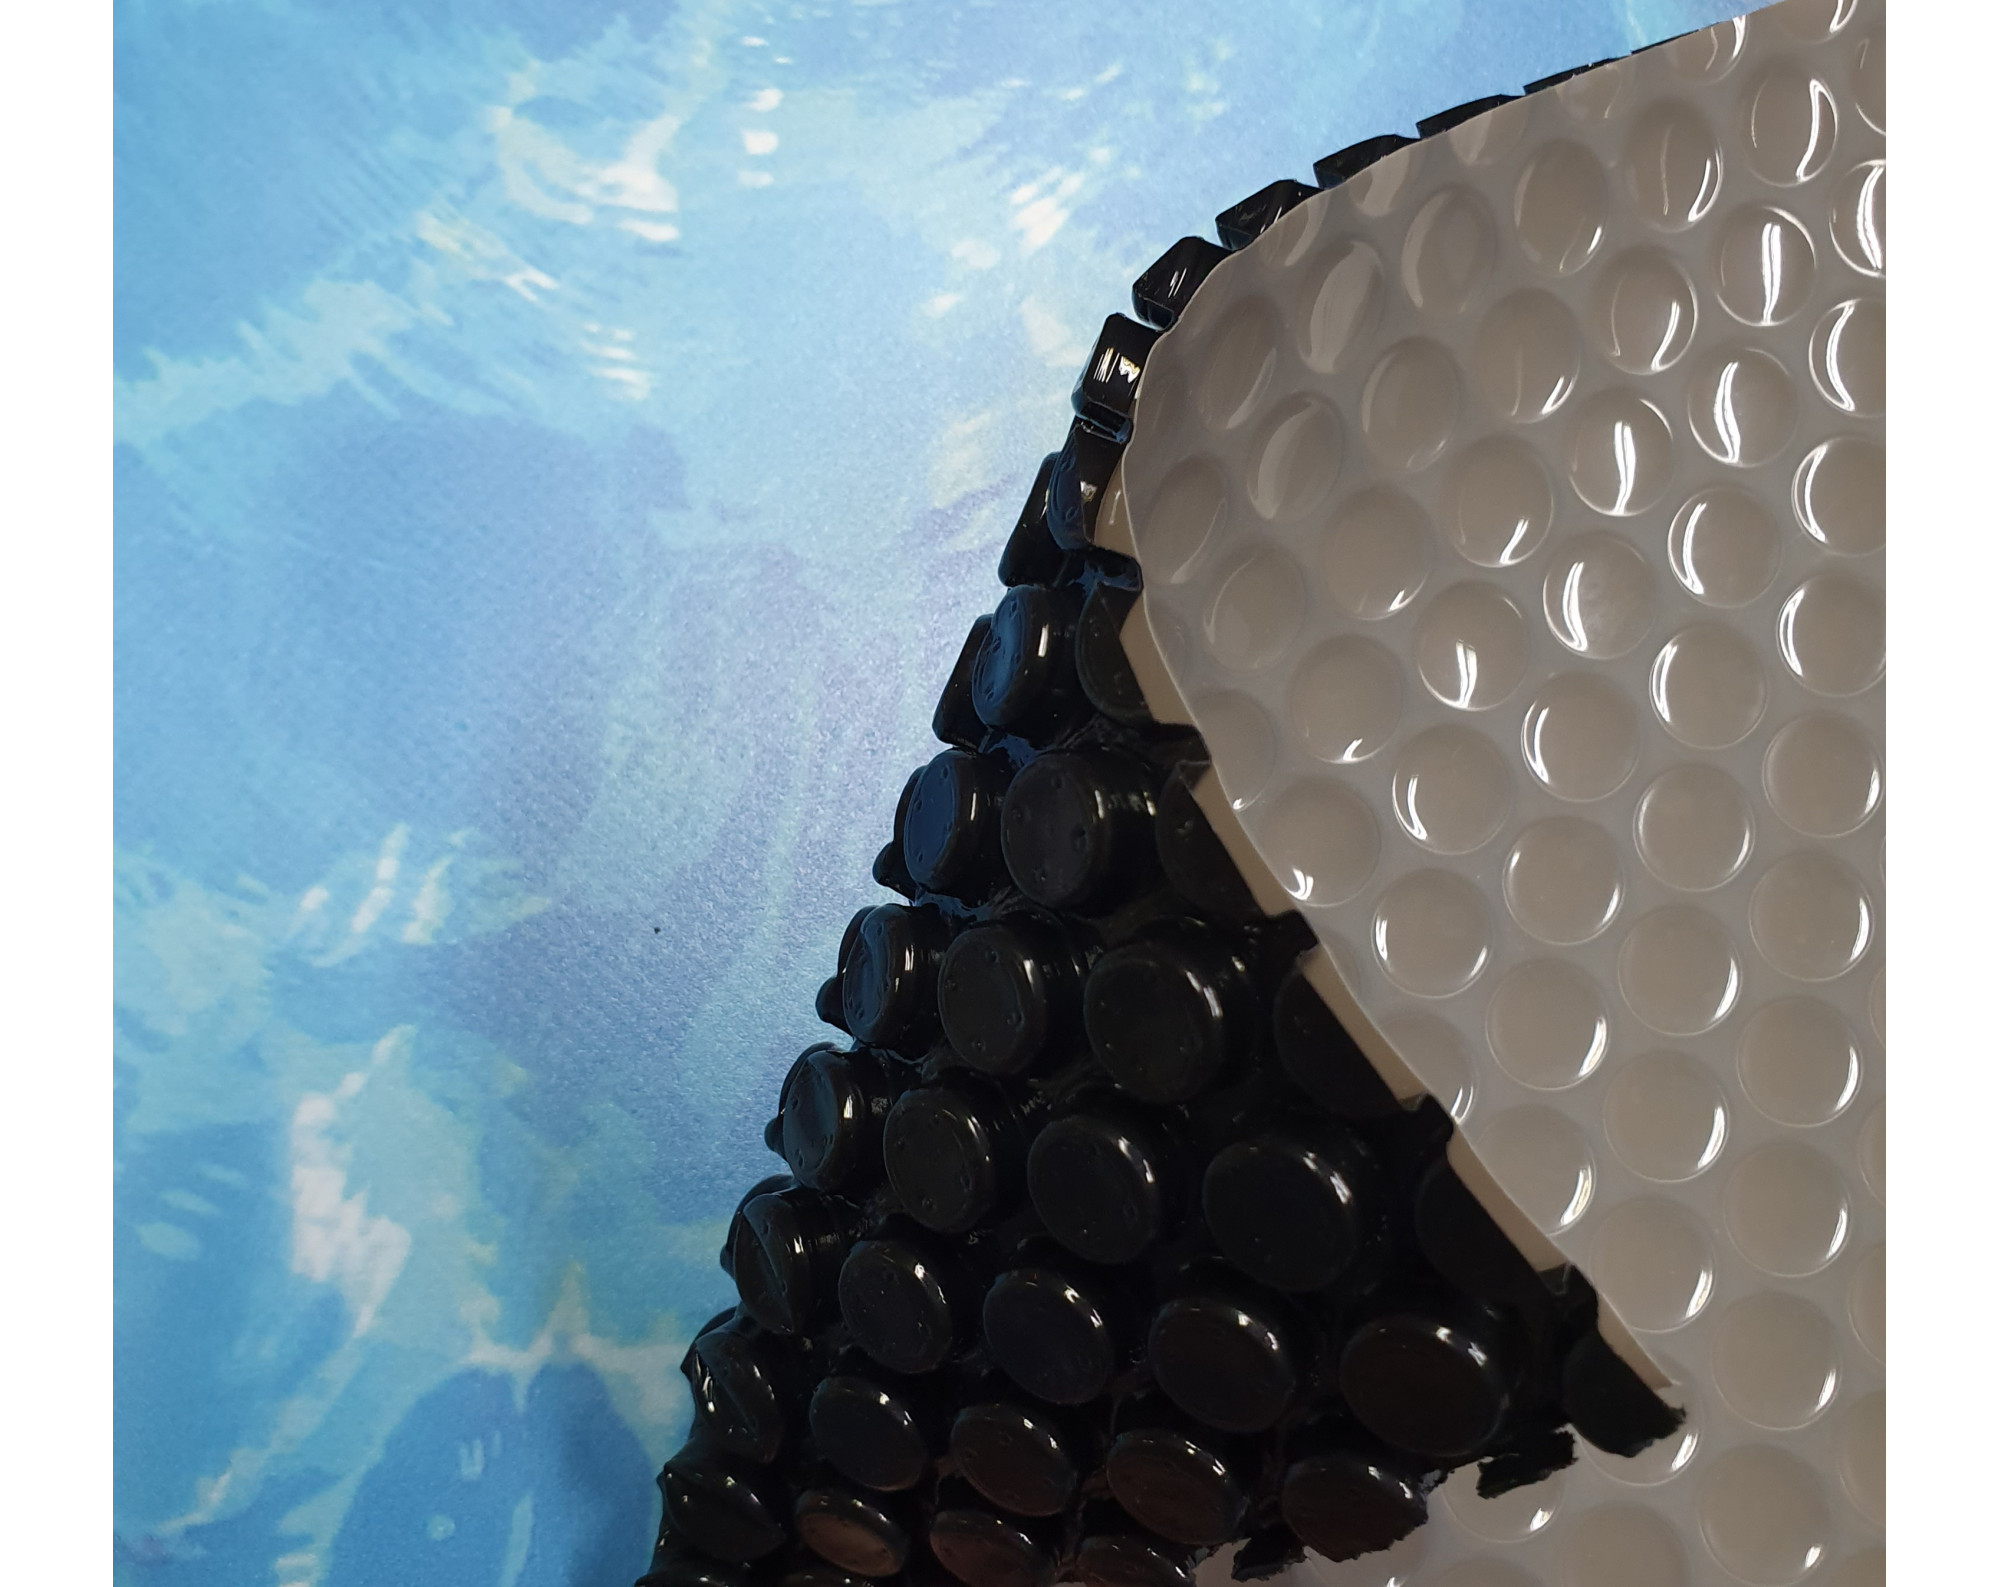 Luxe anti-alg noppenfolie (grijs-zwart 400 micron) voor Intex XTR en Bestway zwembaden ovaal